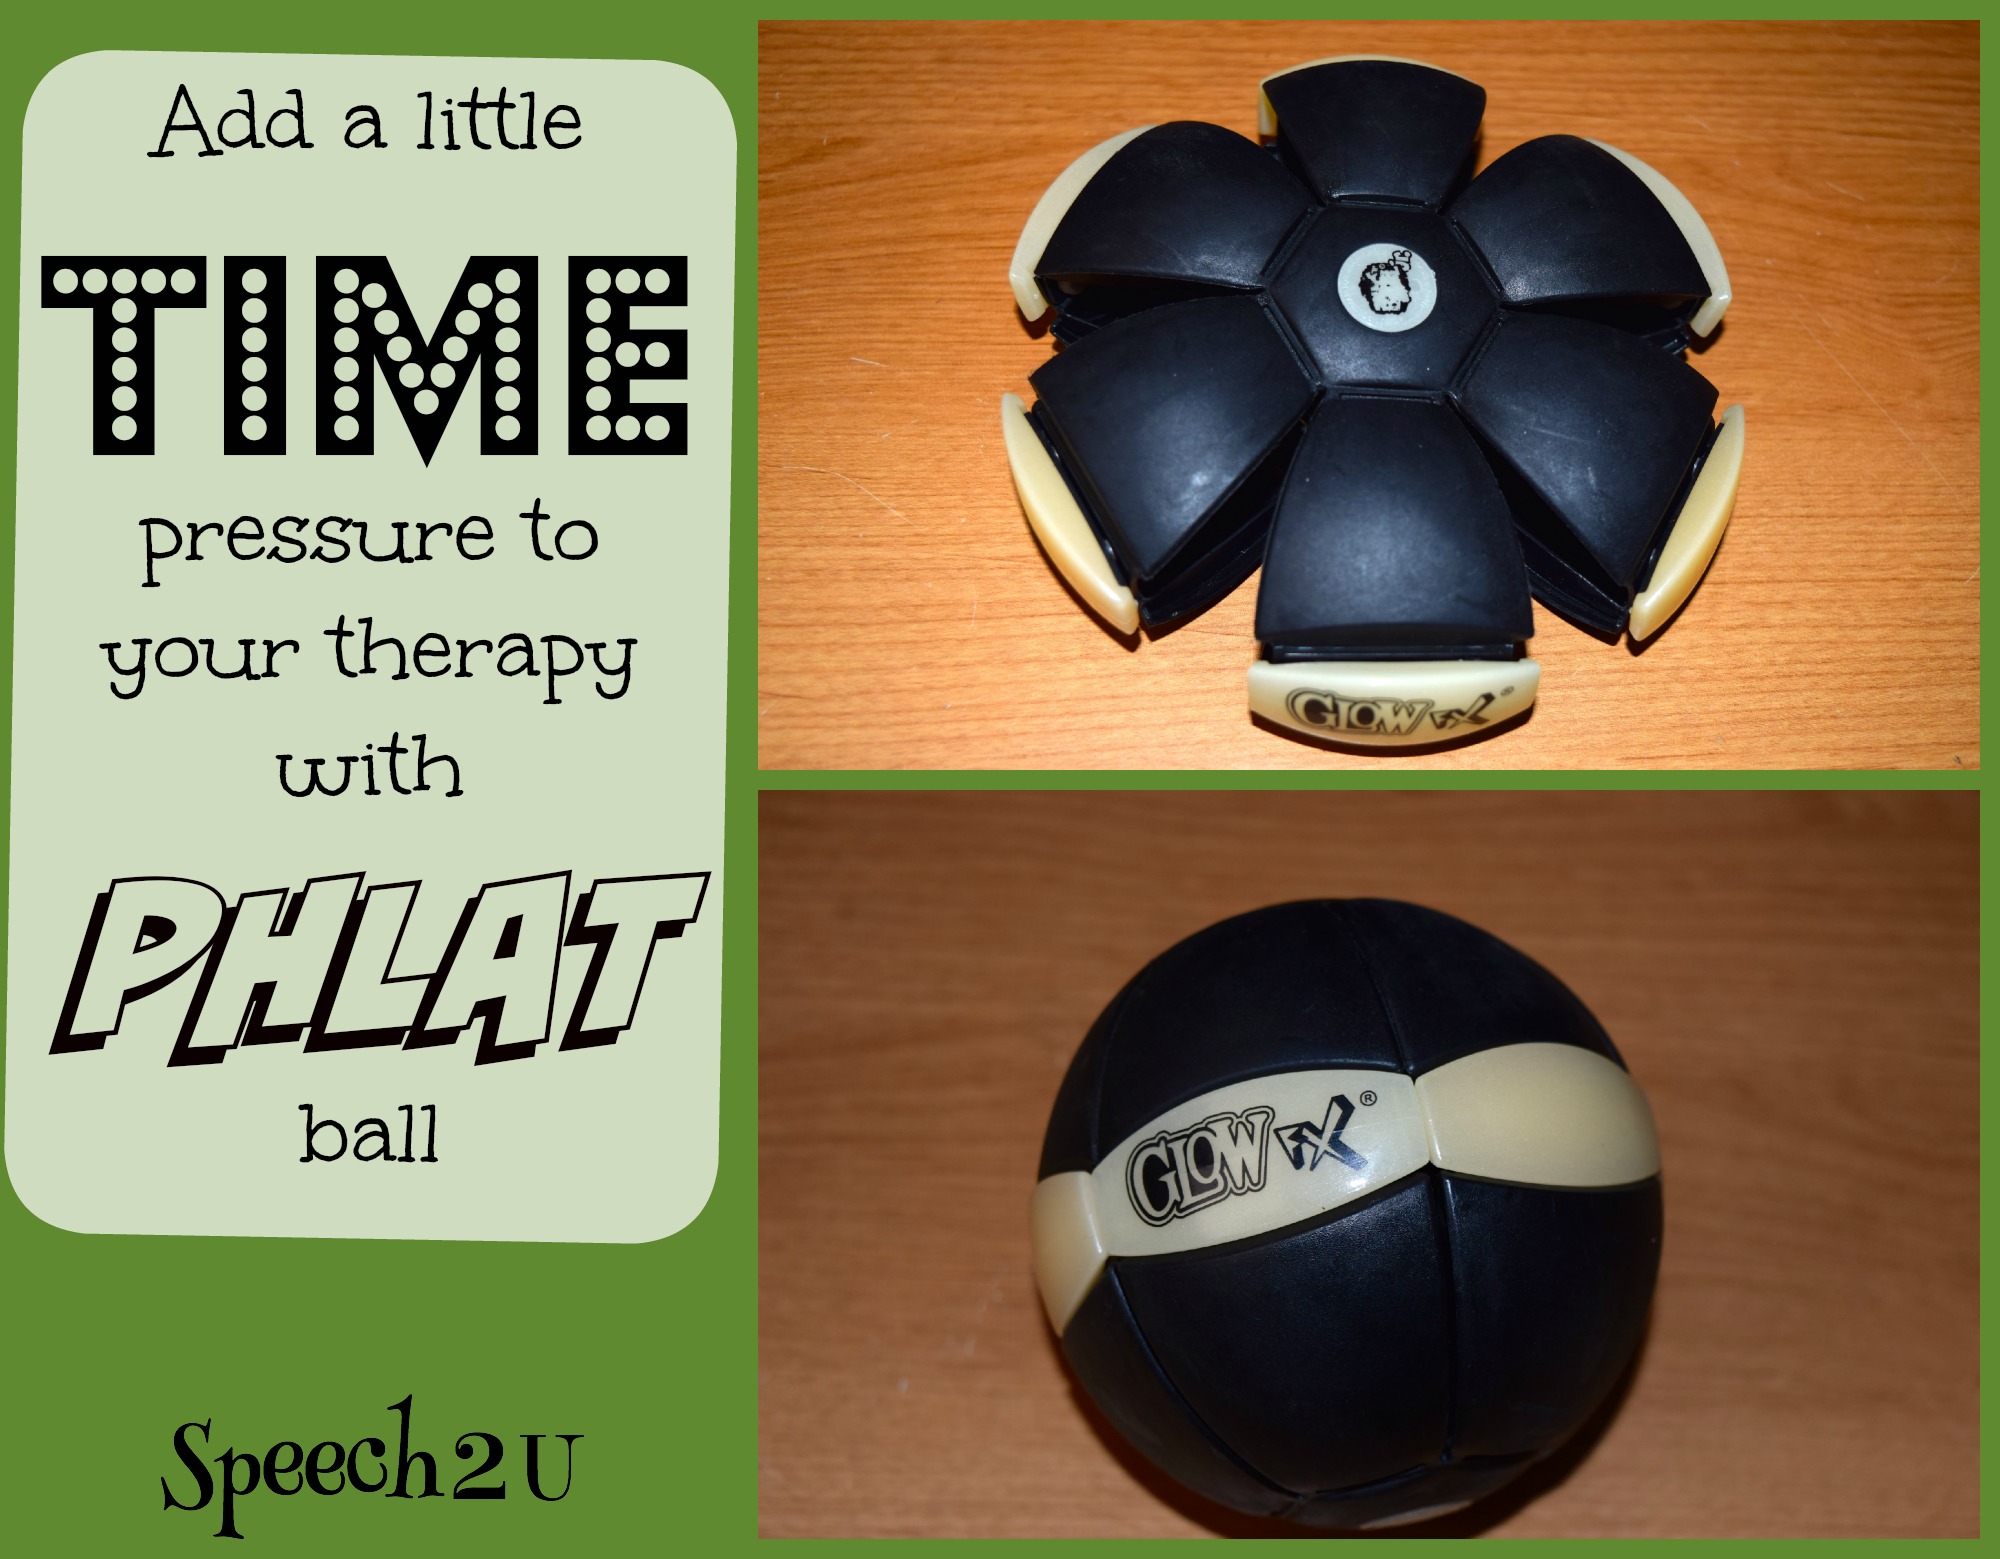 Phlat ball - Speech 2U